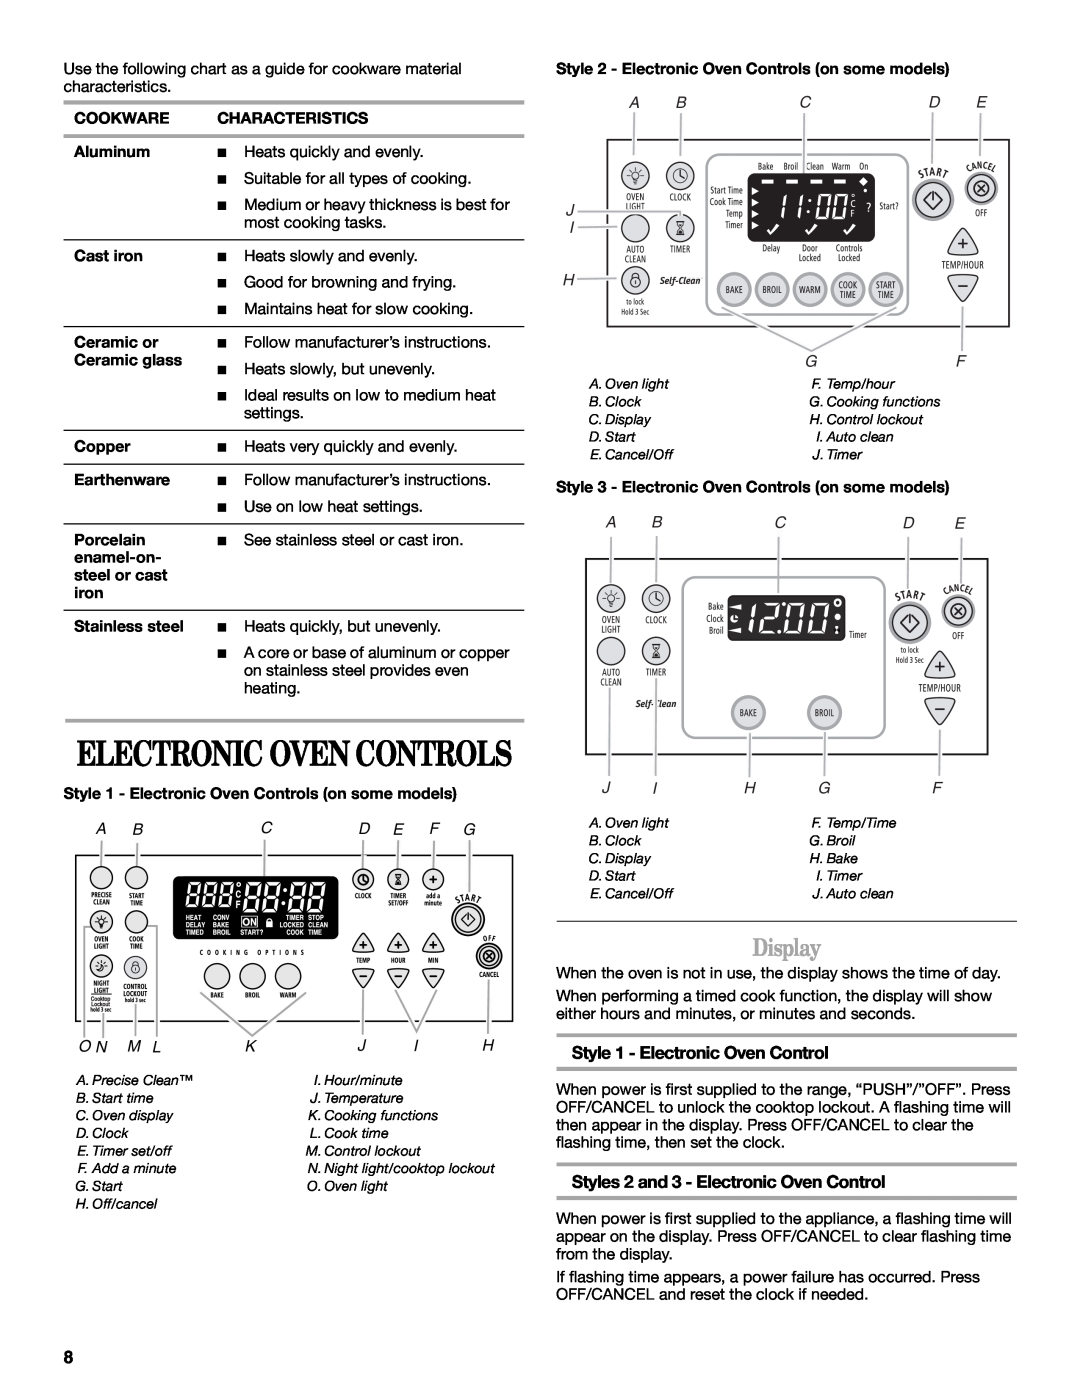 Whirlpool W10110369 manual Display, Electronic Oven Controls, Style 1 - Electronic Oven Control, A Bcd E F G, O N M L 